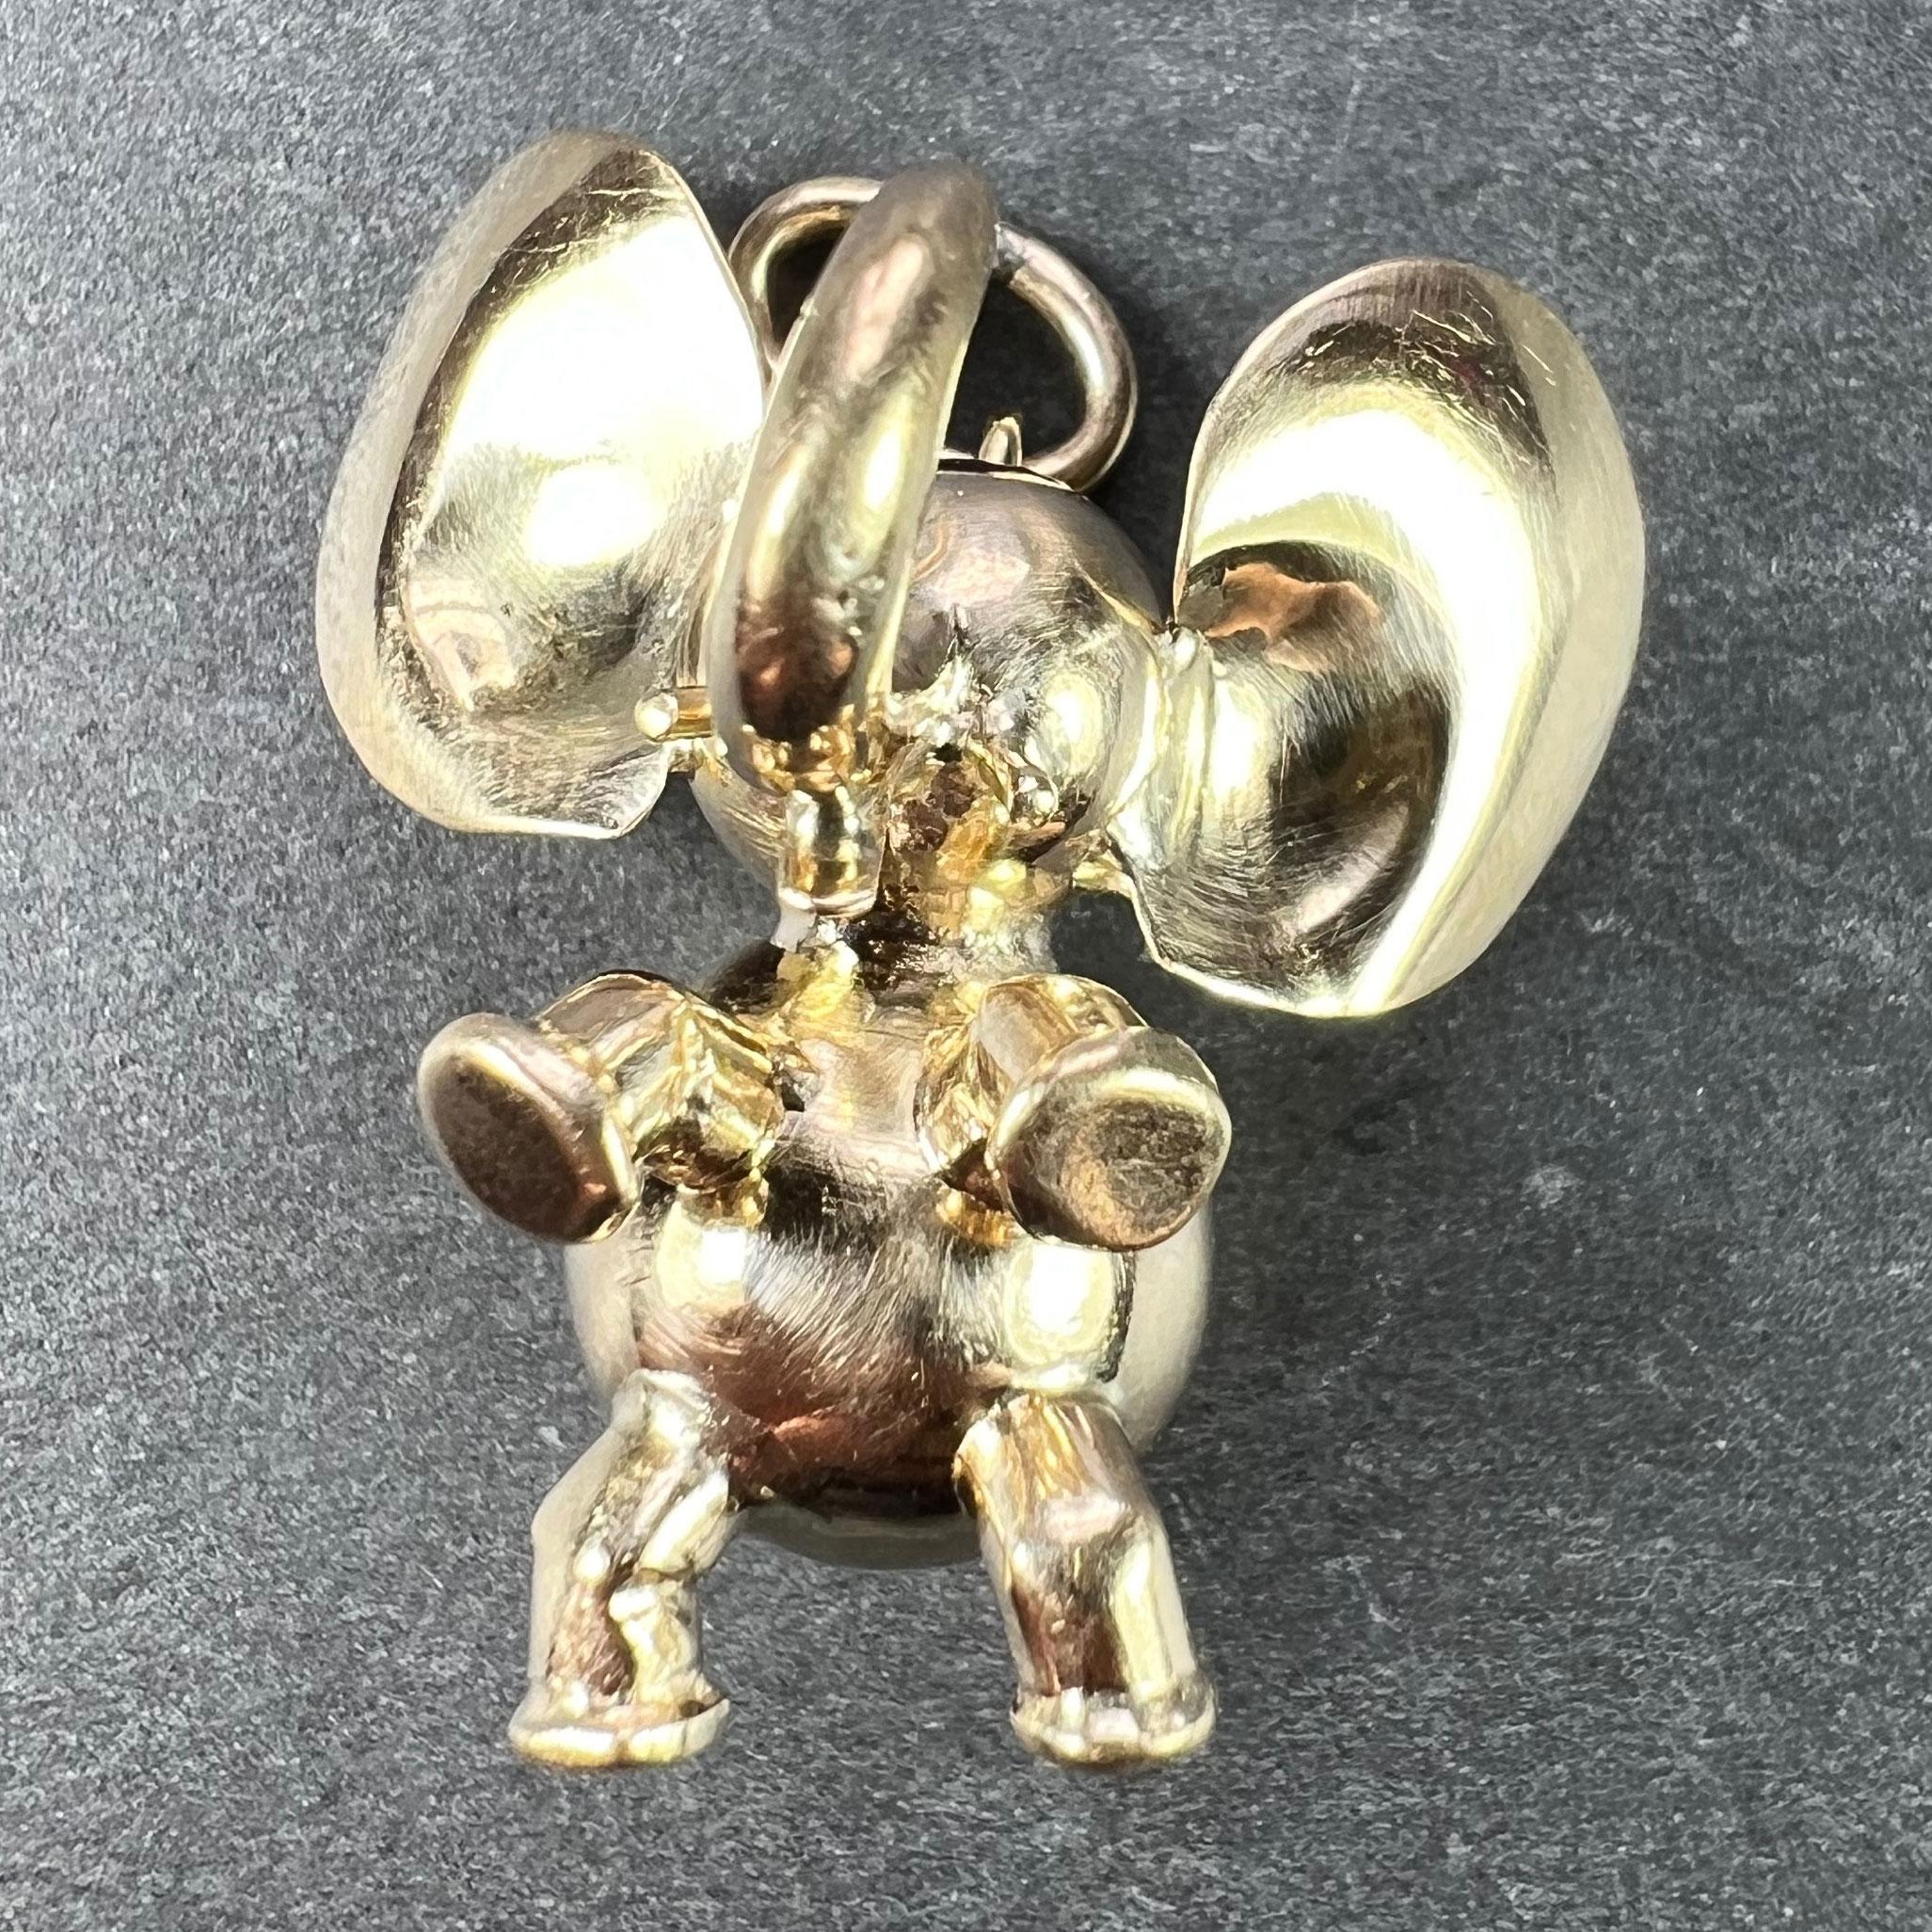 Grand pendentif à breloques en or jaune 14 carats (14K) conçu comme un éléphant porte-bonheur aux grandes oreilles. Estampillé 585 pour l'or 14 carats.

Dimensions : 2,5 x 2,3 x 2 cm (sans l'anneau de saut) : 2,5 x 2,3 x 2 cm (sans anneau de